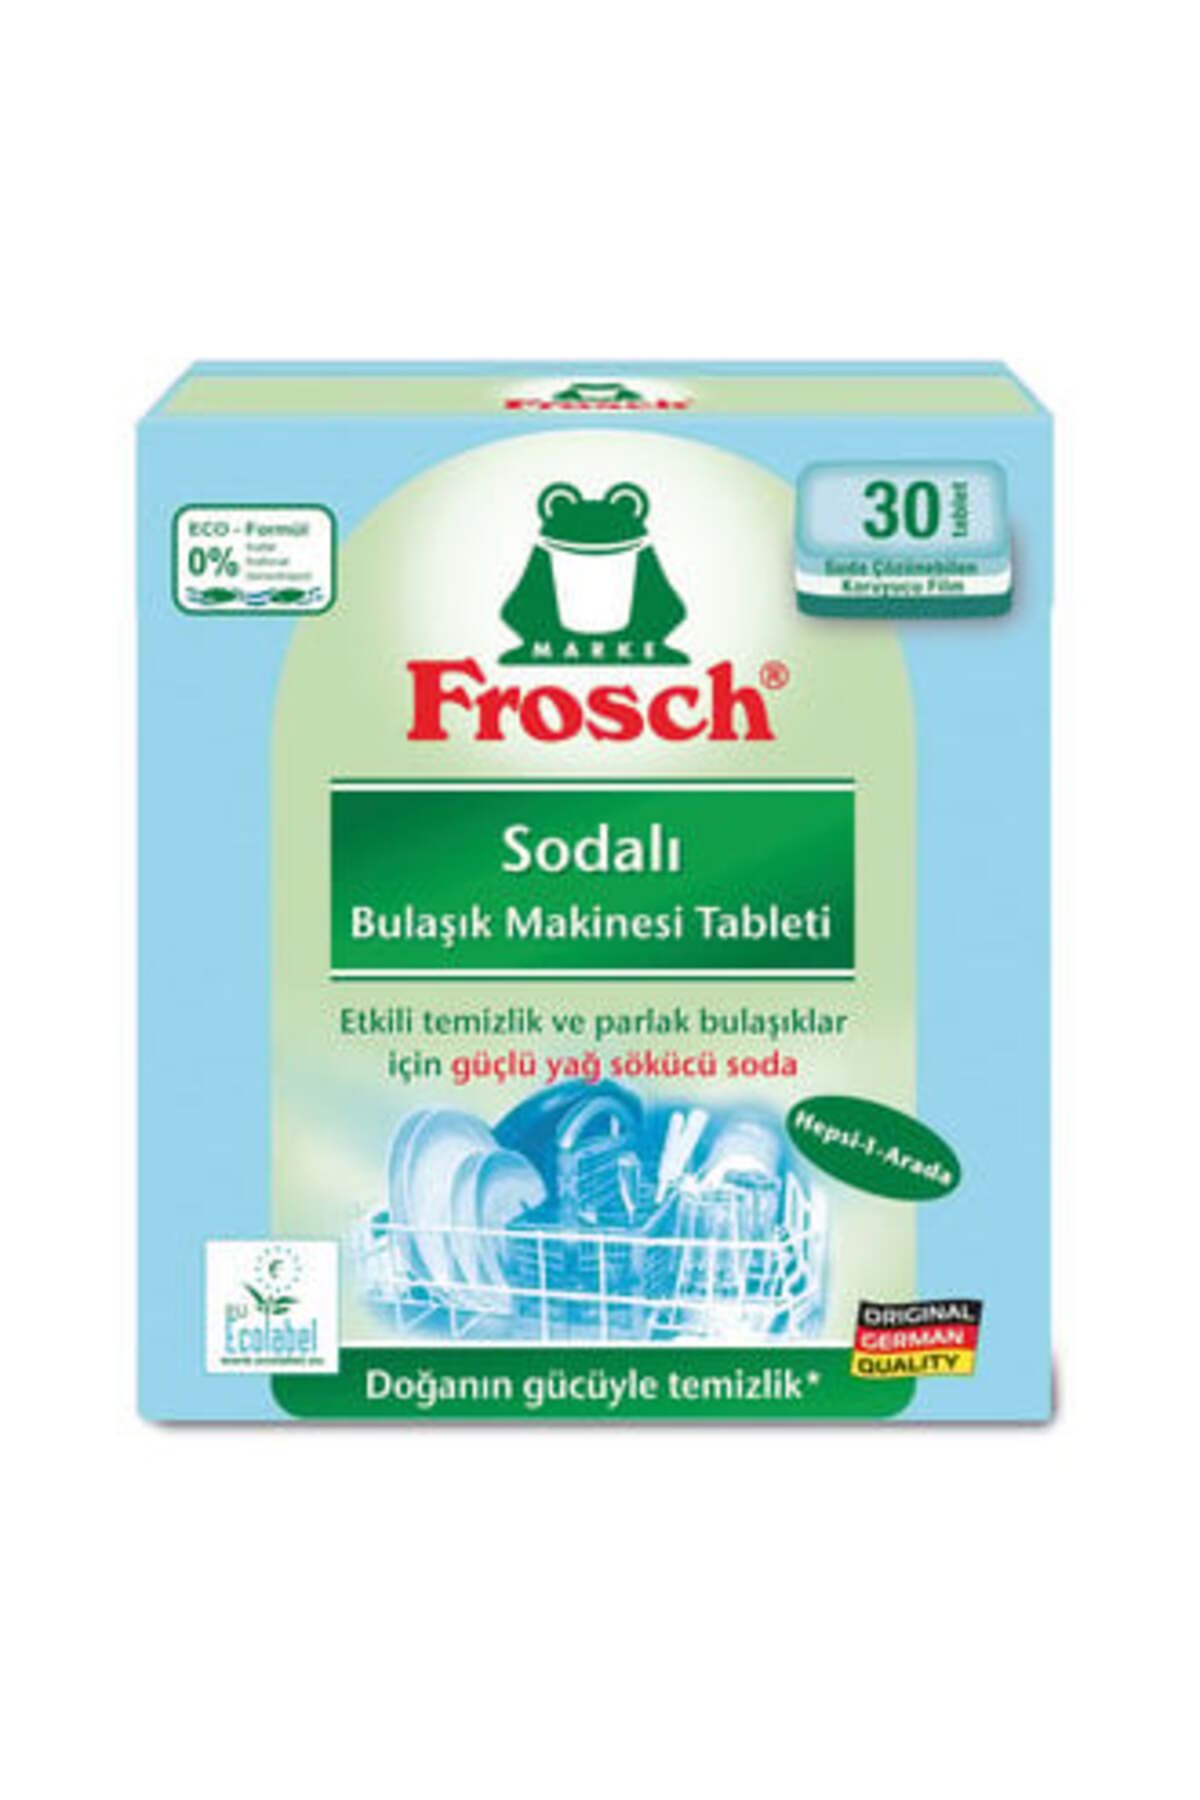 Frosch Sodalı Bulaşık Makinesi Tableti 30 Tablet ( 1 ADET )